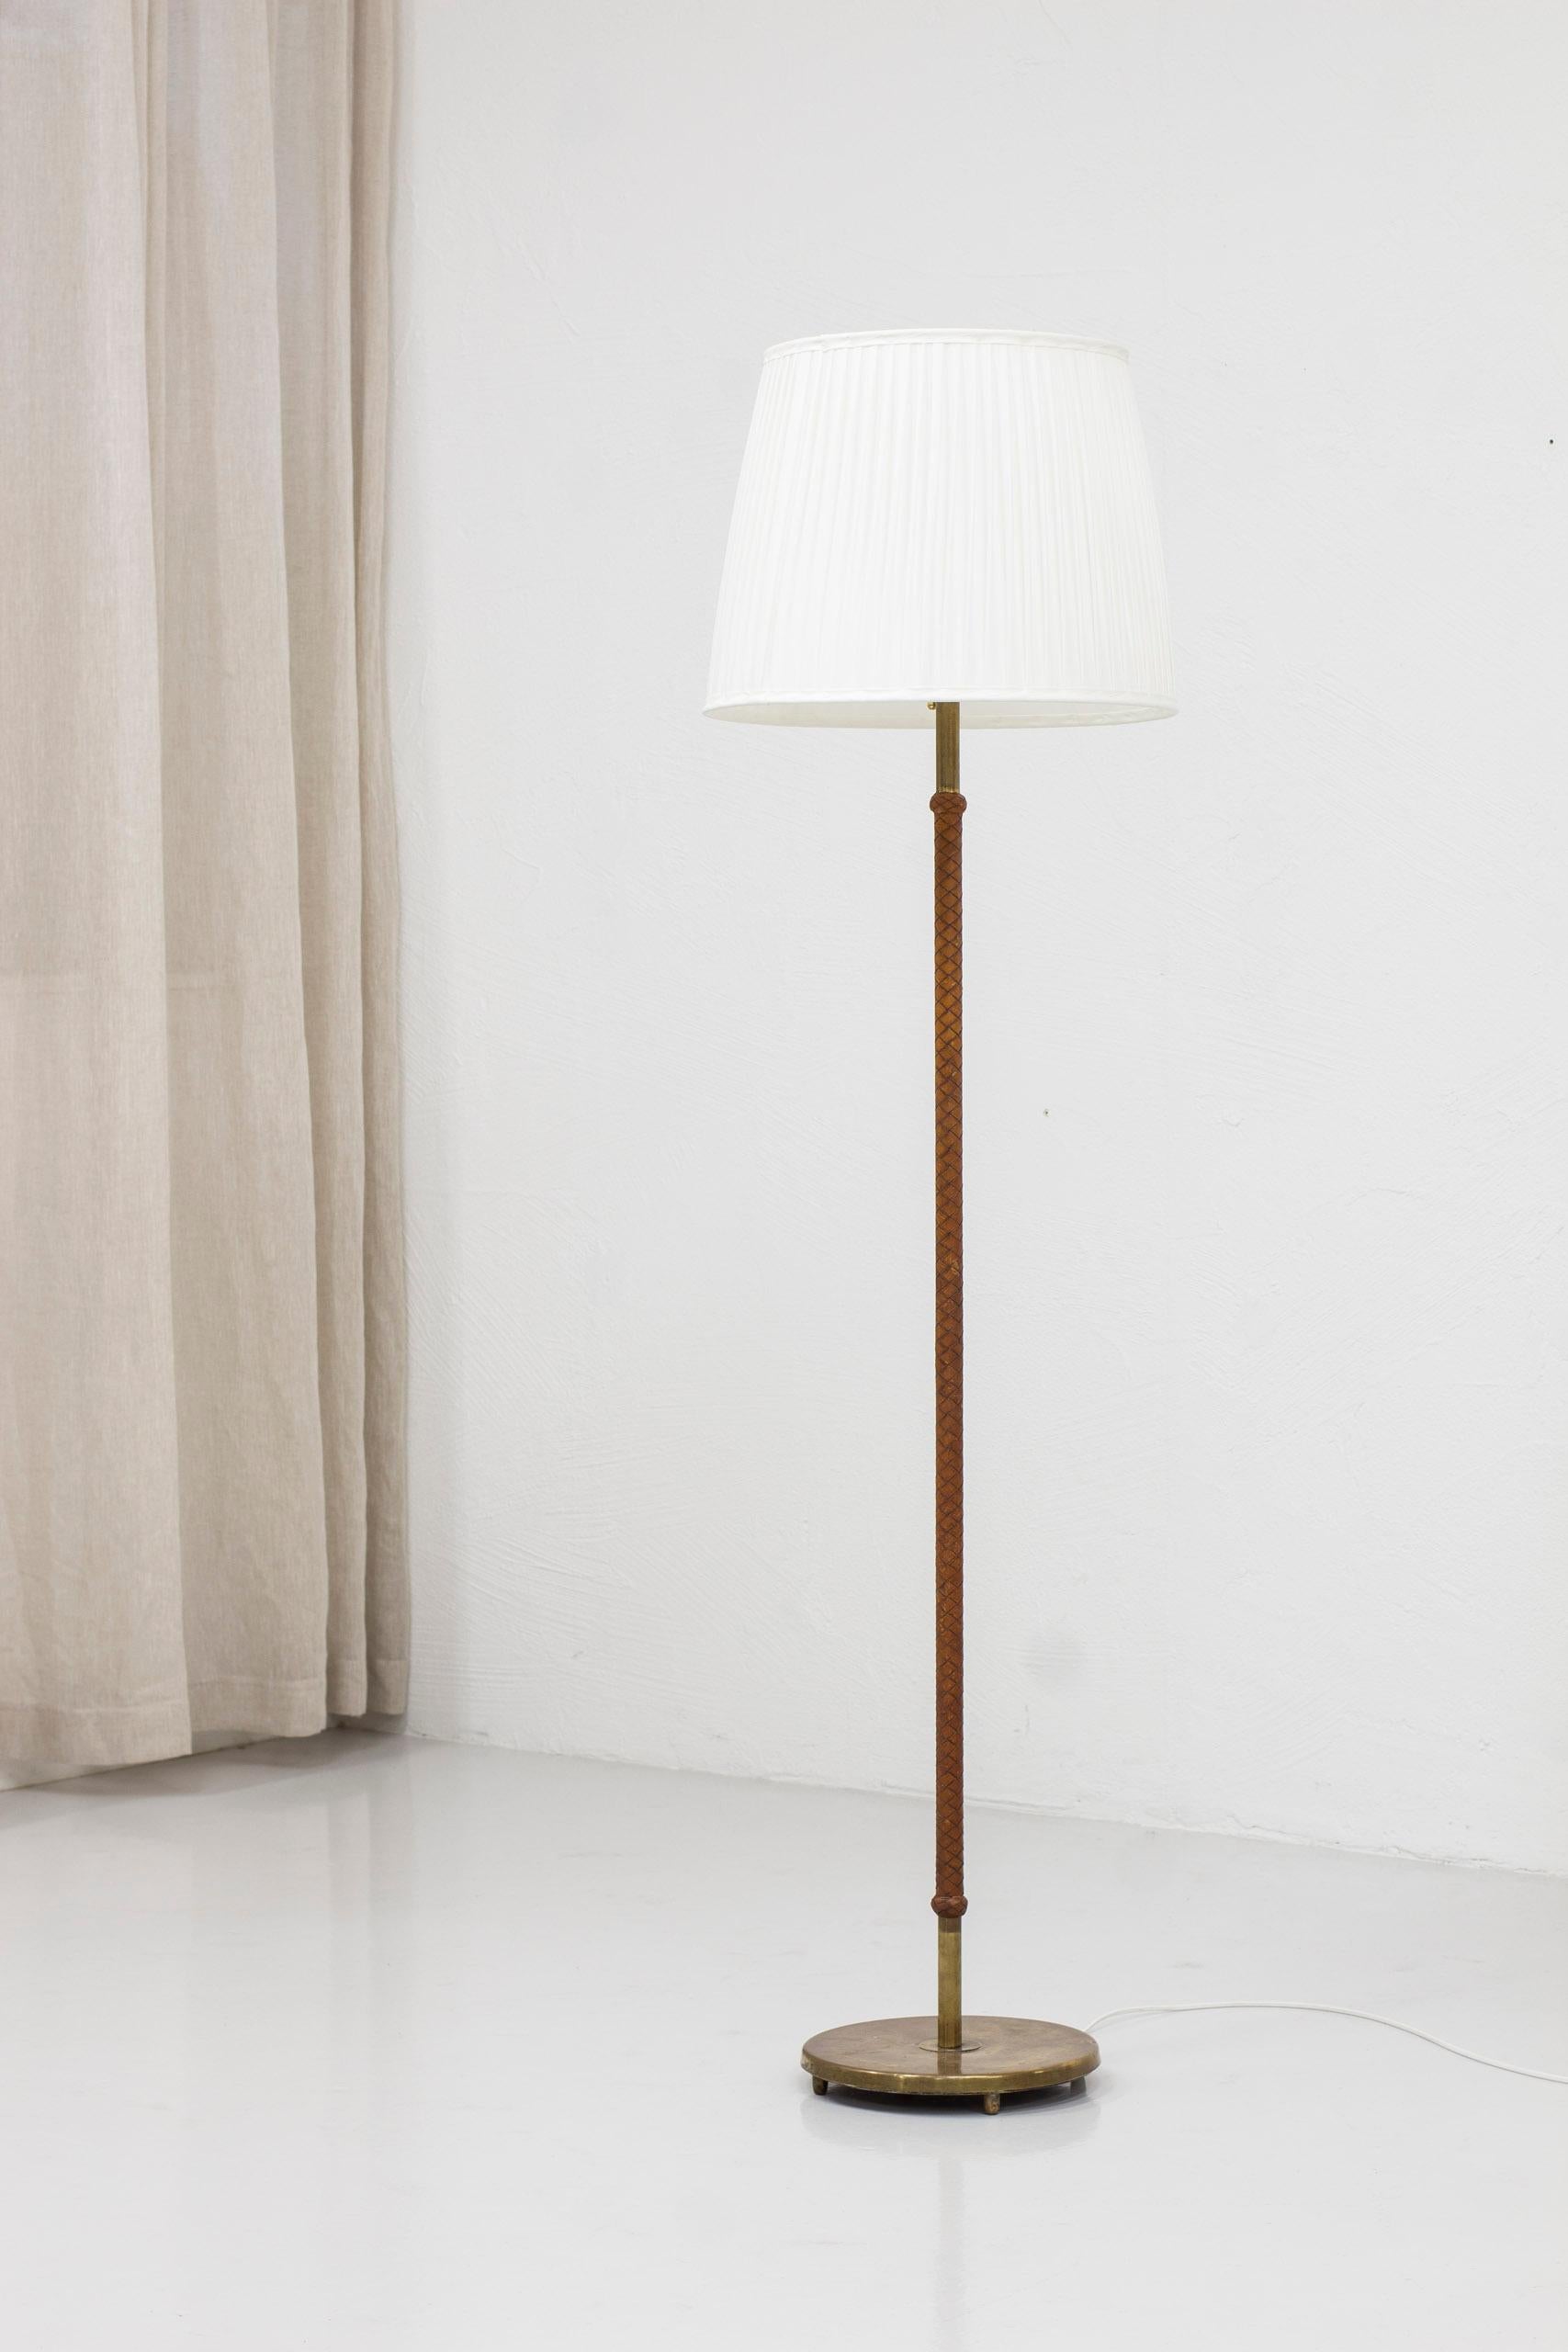 Stehleuchte, entworfen und hergestellt in Schweden in den 1940-50er Jahren. Aus Messing mit original geflochtener Lederumwicklung am Stiel. Der originale Lampenschirm wurde mit weißem Chintz-Stoff neu genäht, um das Original nachzubilden.